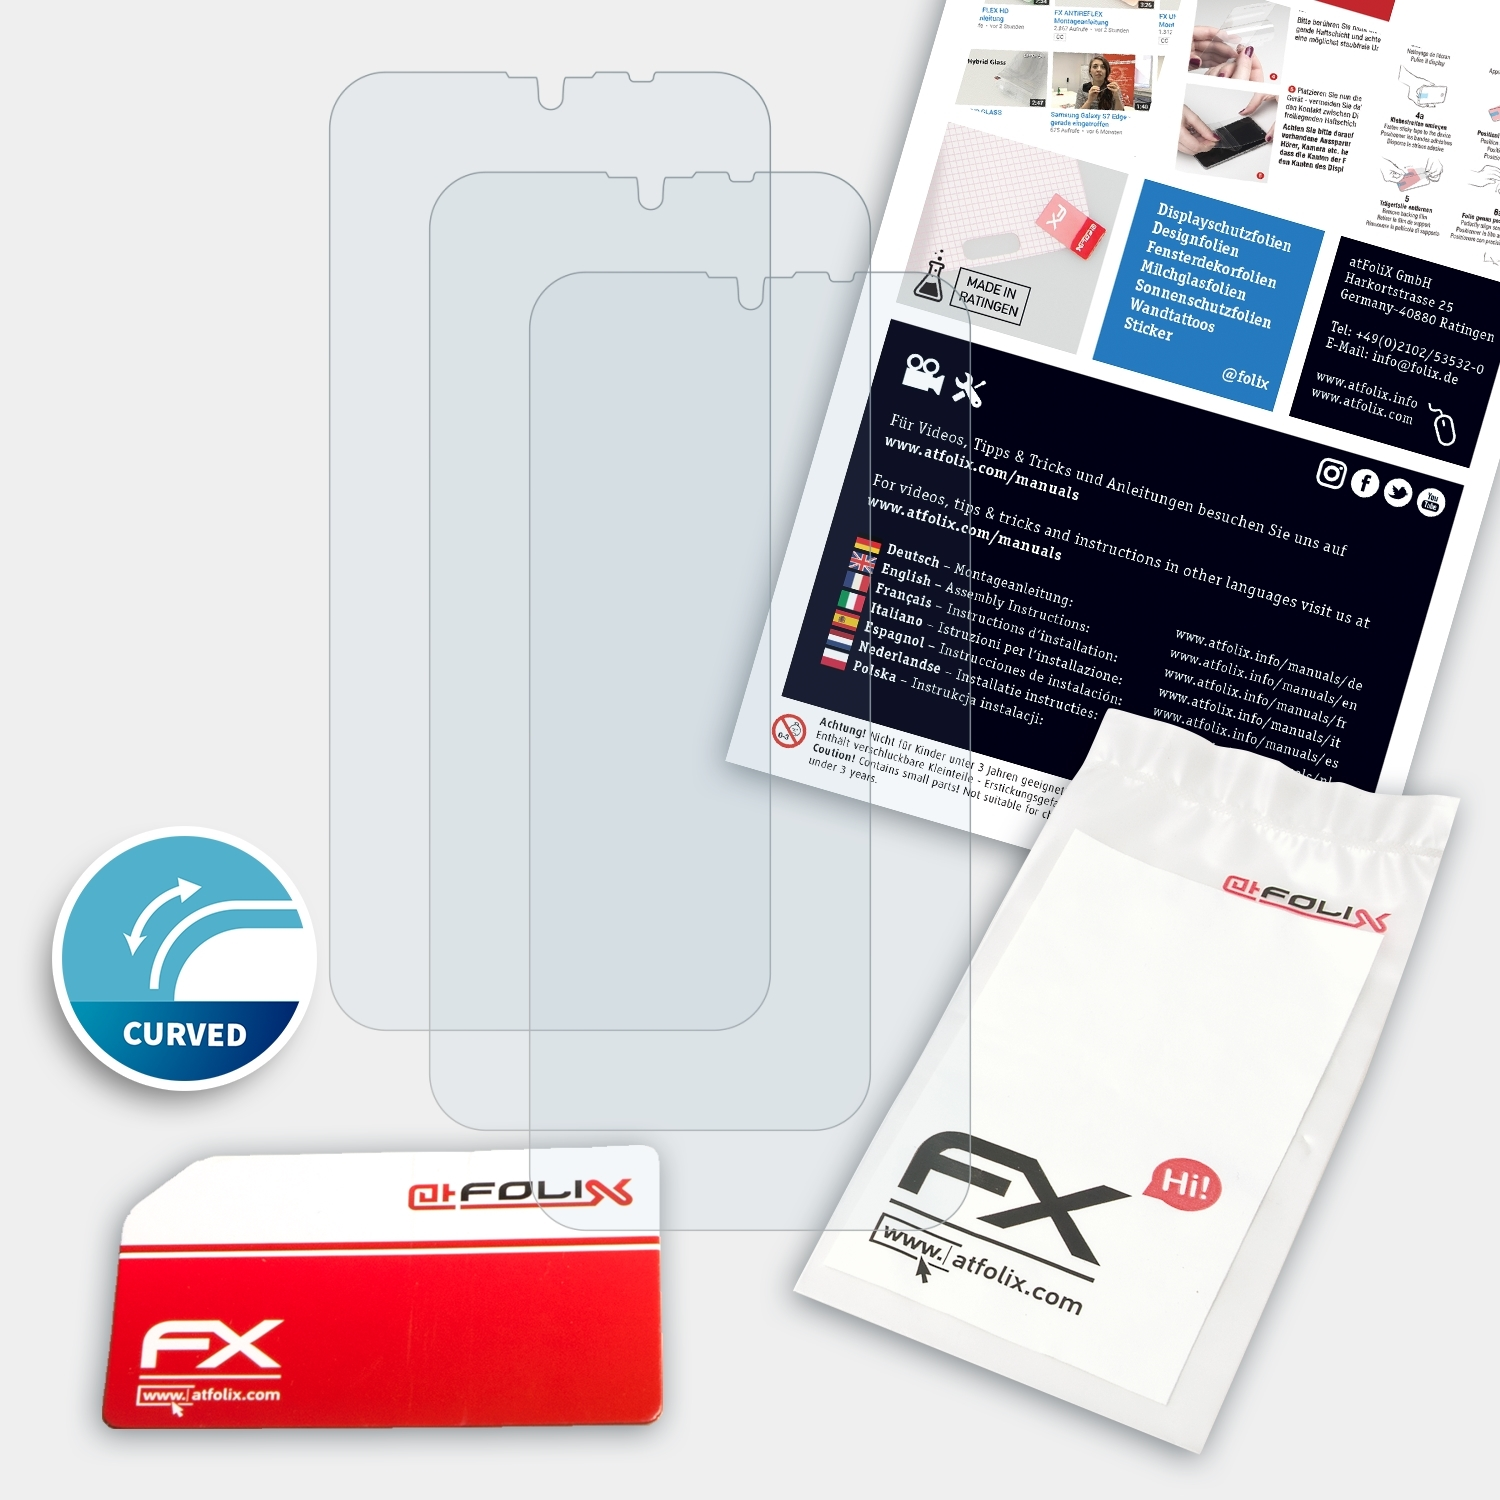 Gigaset 3x Displayschutz(für GS110) FX-ActiFleX ATFOLIX